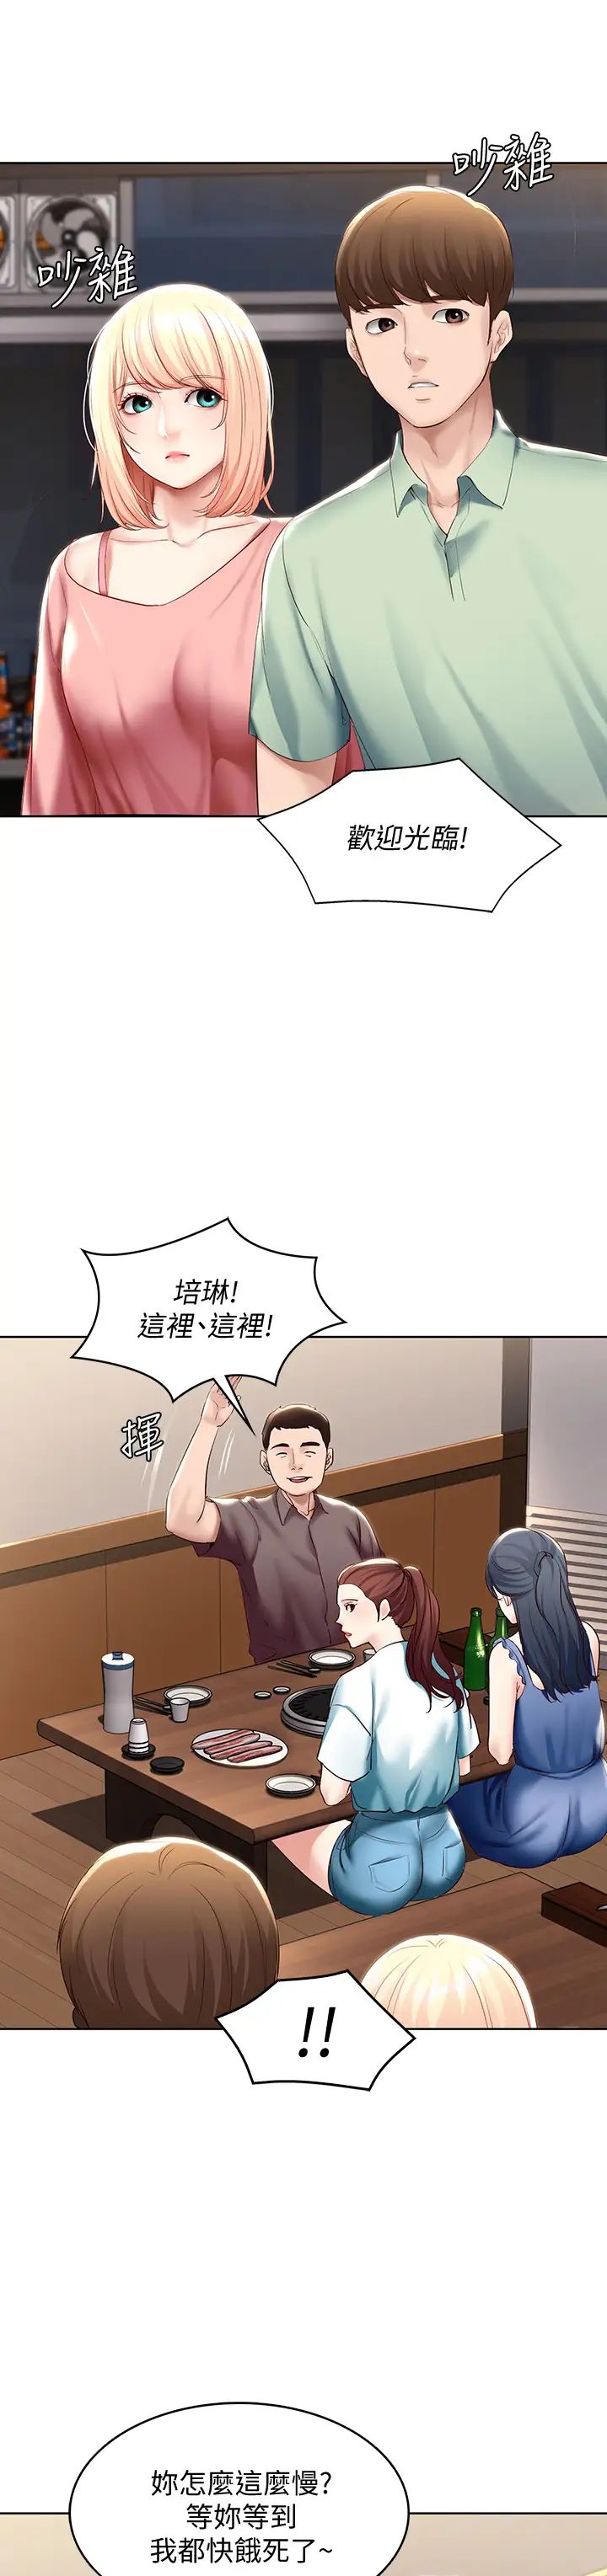 韩国污漫画 寄宿日記 第62话培琳可口的酥胸 40